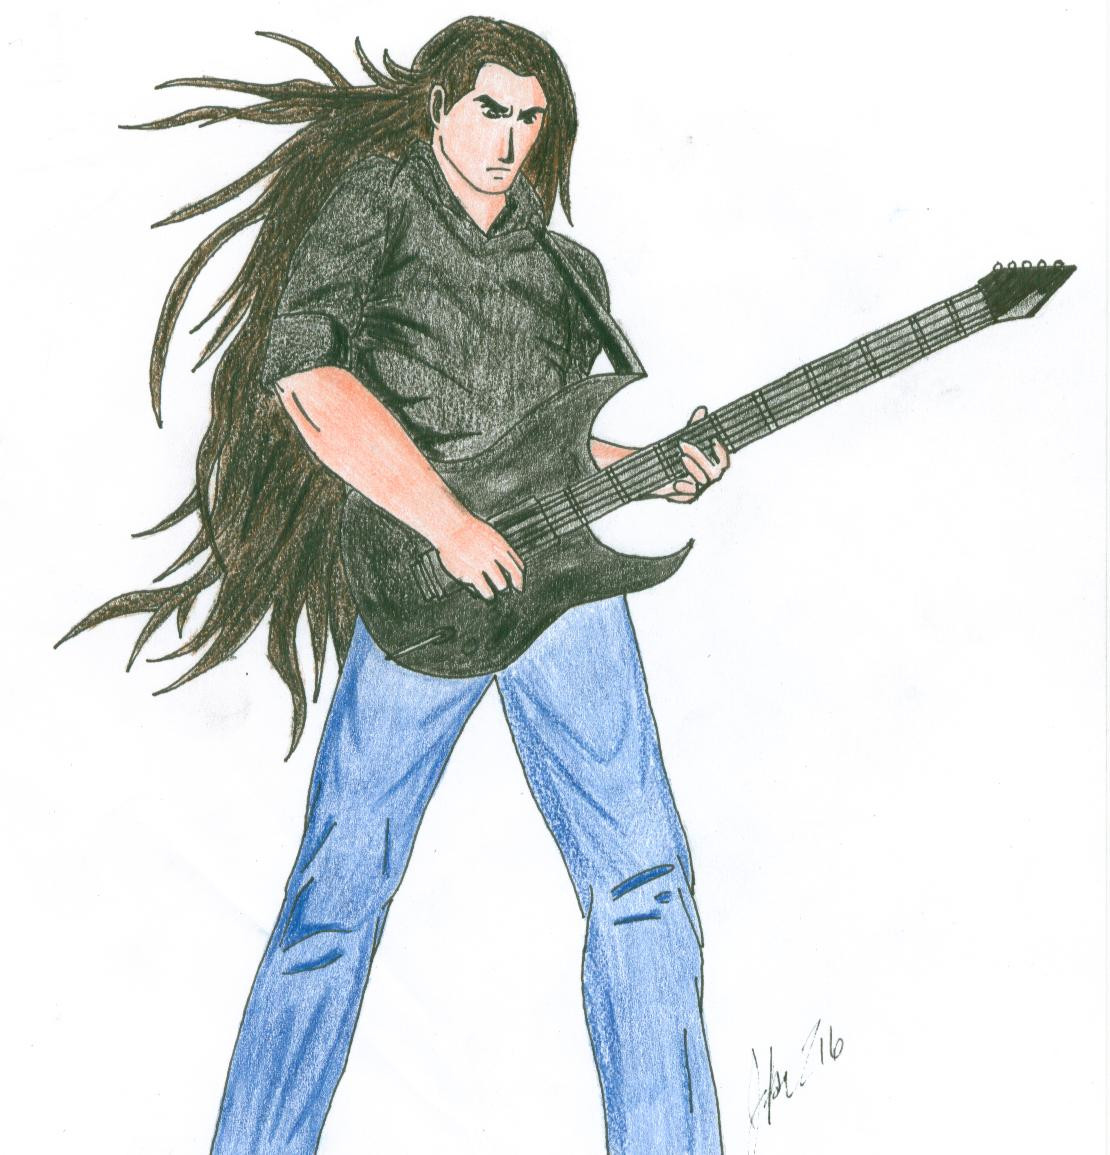 Guitarist Character by Joker216